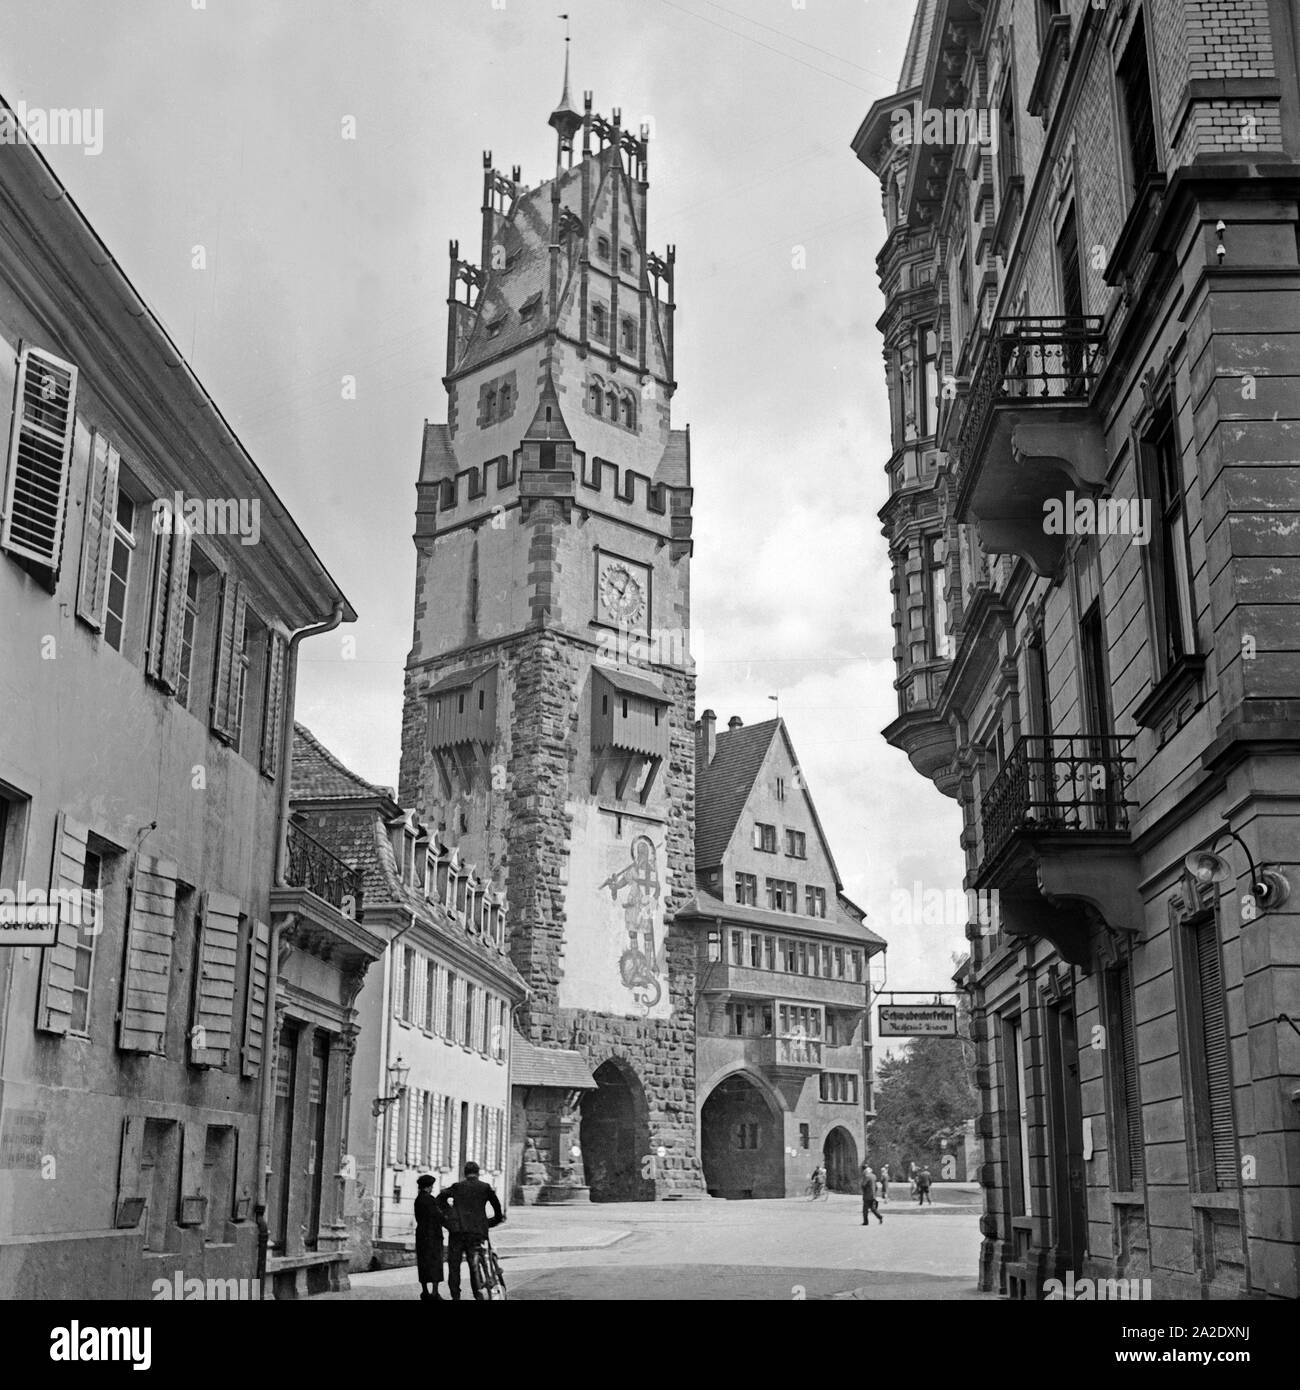 Schwabentor Das in der Altstadt von Freiburg, Deutschland 1930er Jahre. Il gate Schwabentor presso la vecchia città di Friburgo, Germania 1930s. Foto Stock